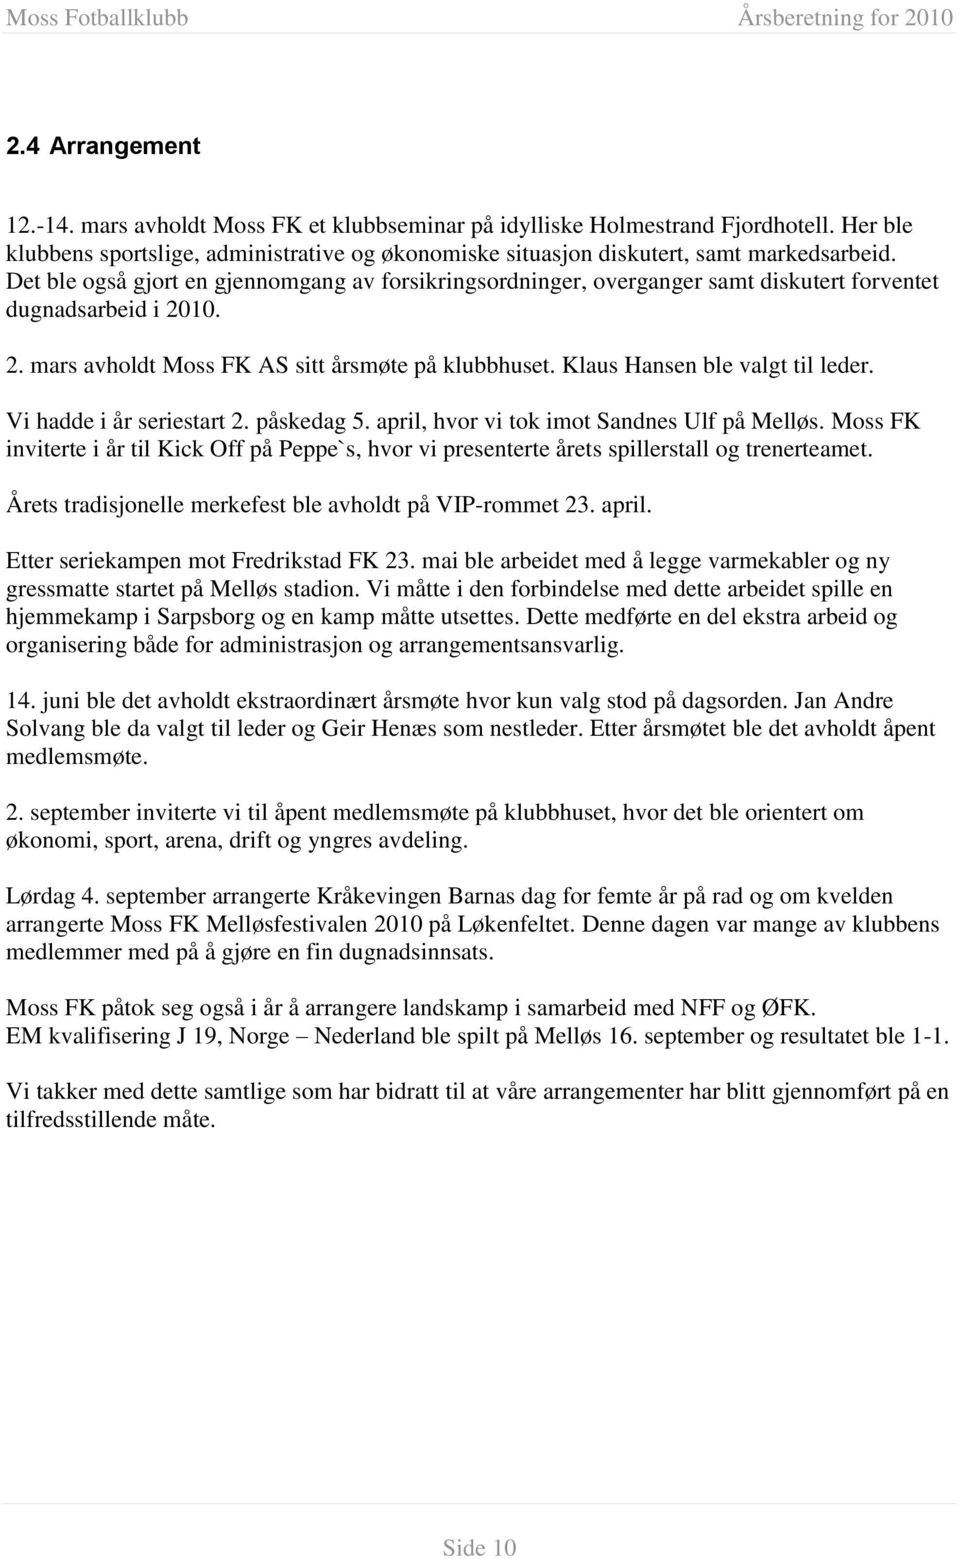 Klaus Hansen ble valgt til leder. Vi hadde i år seriestart 2. påskedag 5. april, hvor vi tok imot Sandnes Ulf på Melløs.